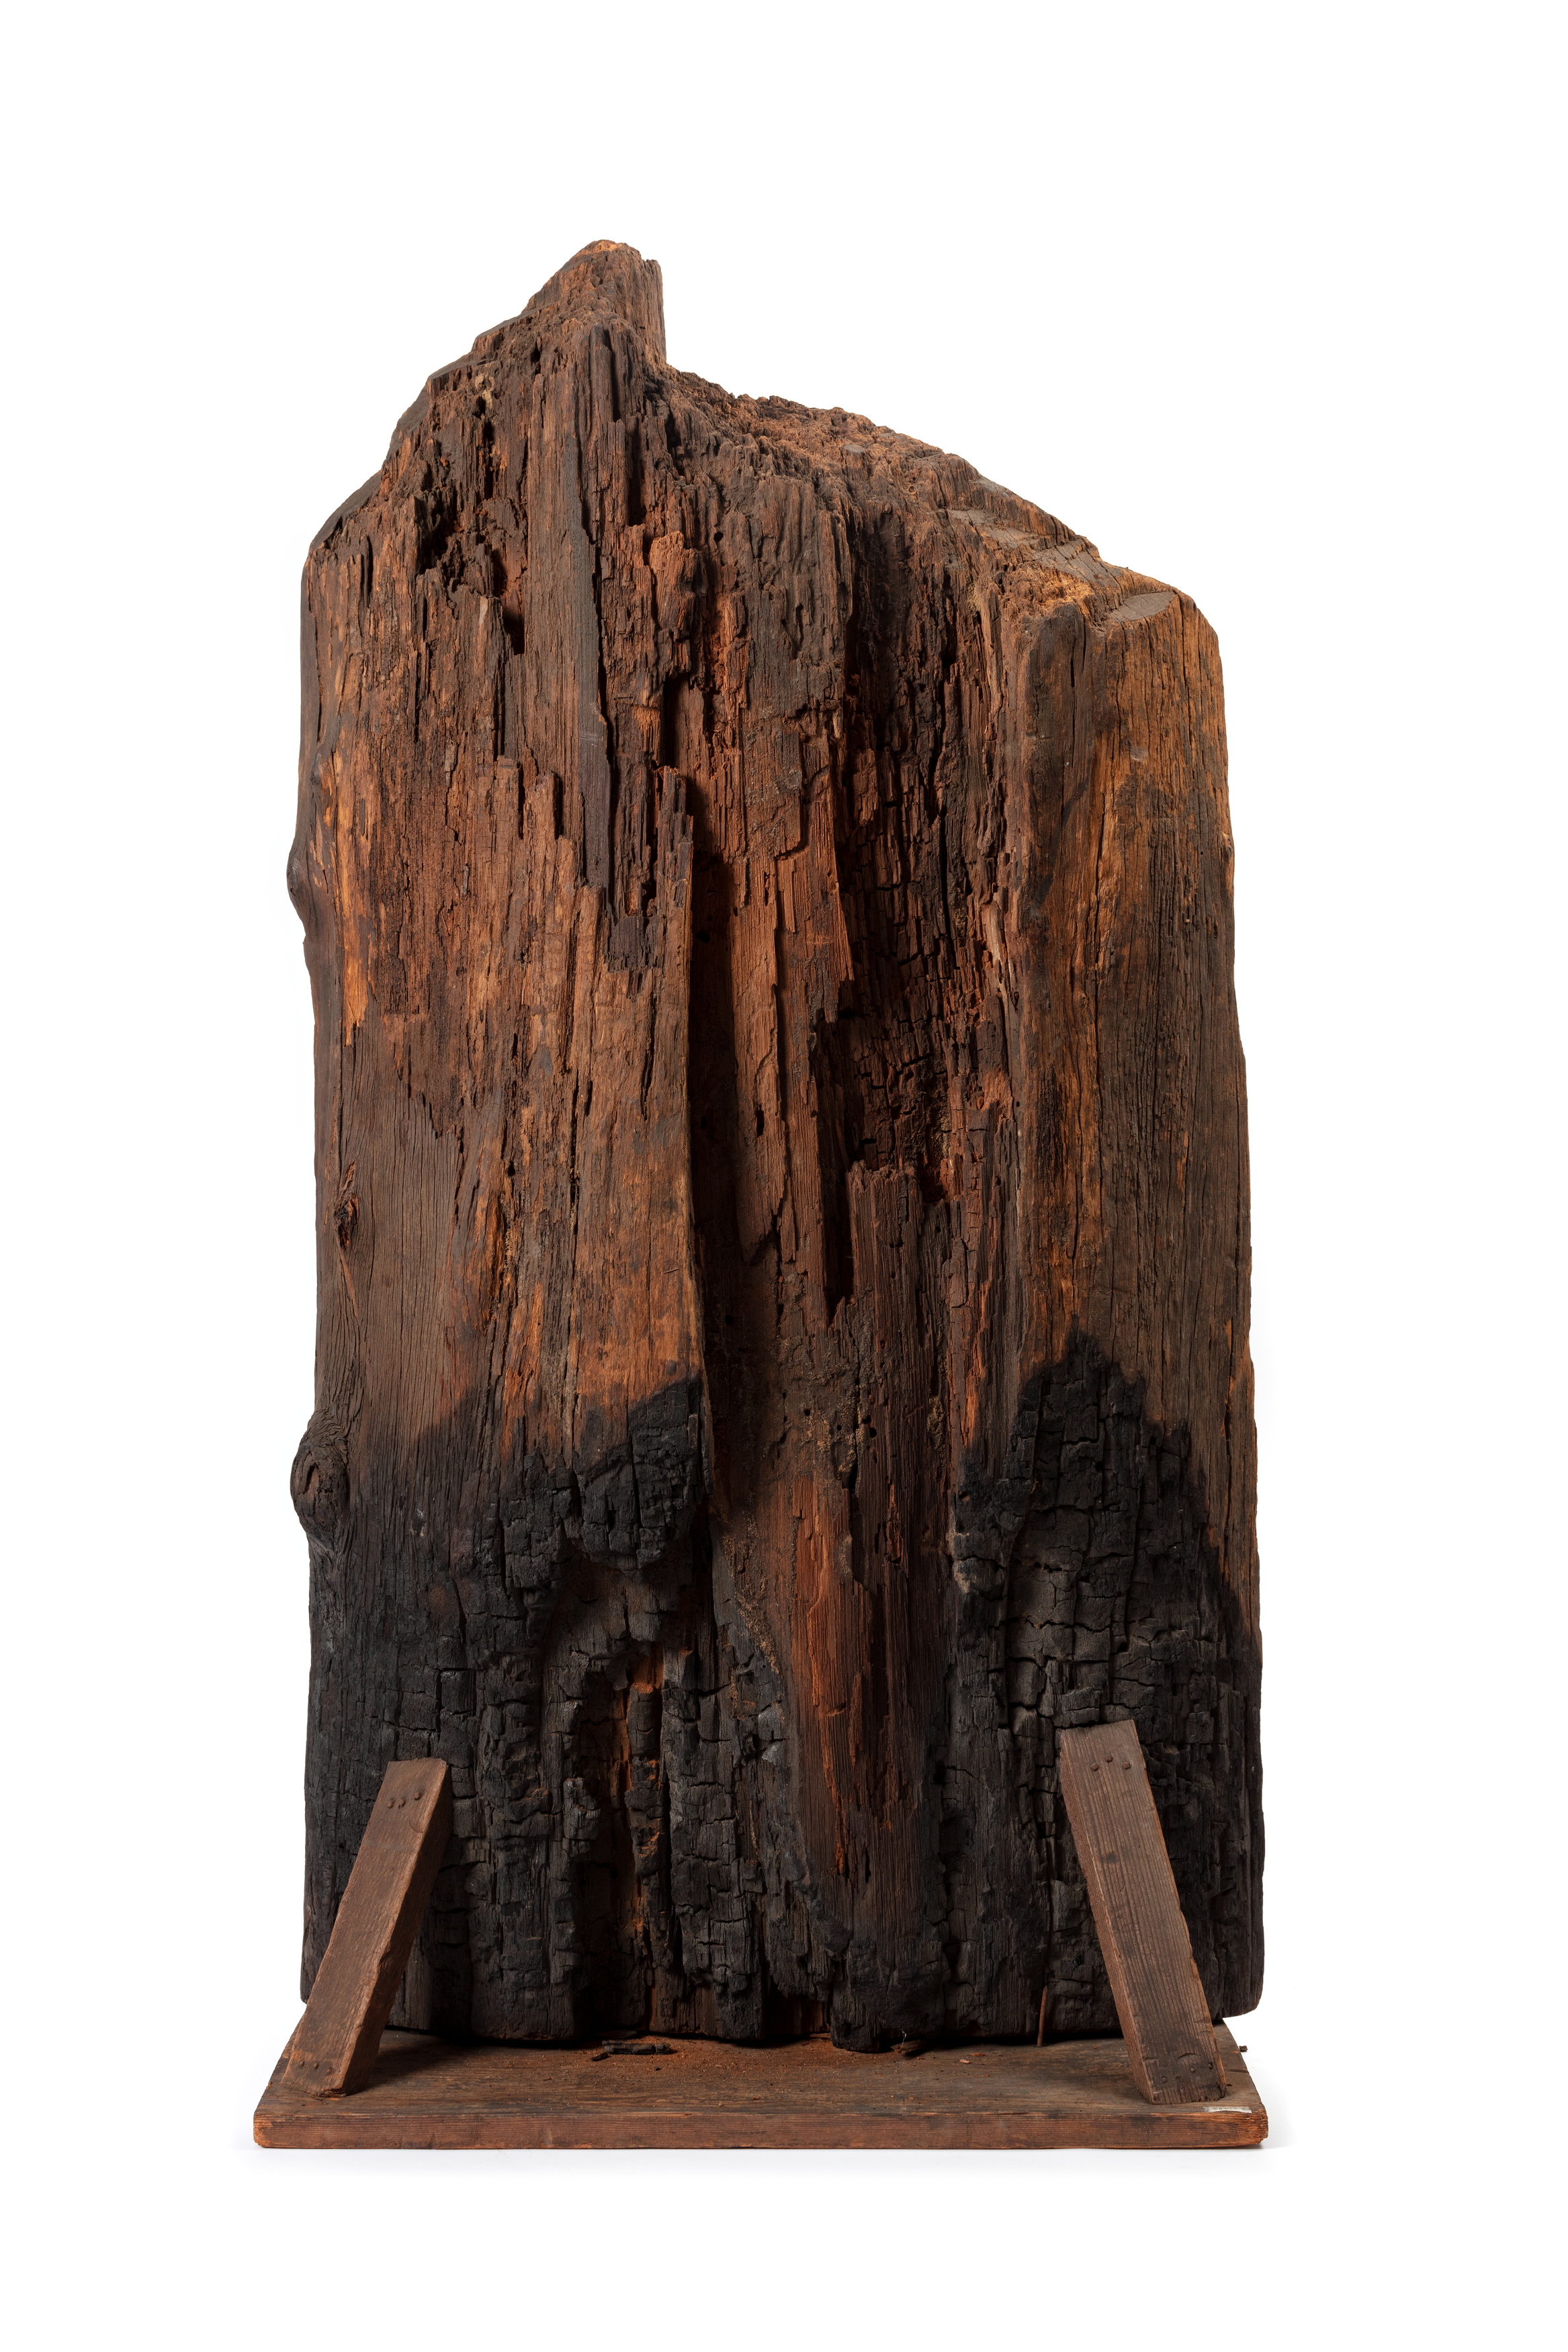 White Mountain Ash (Eucalyptus oreades) timber specimen